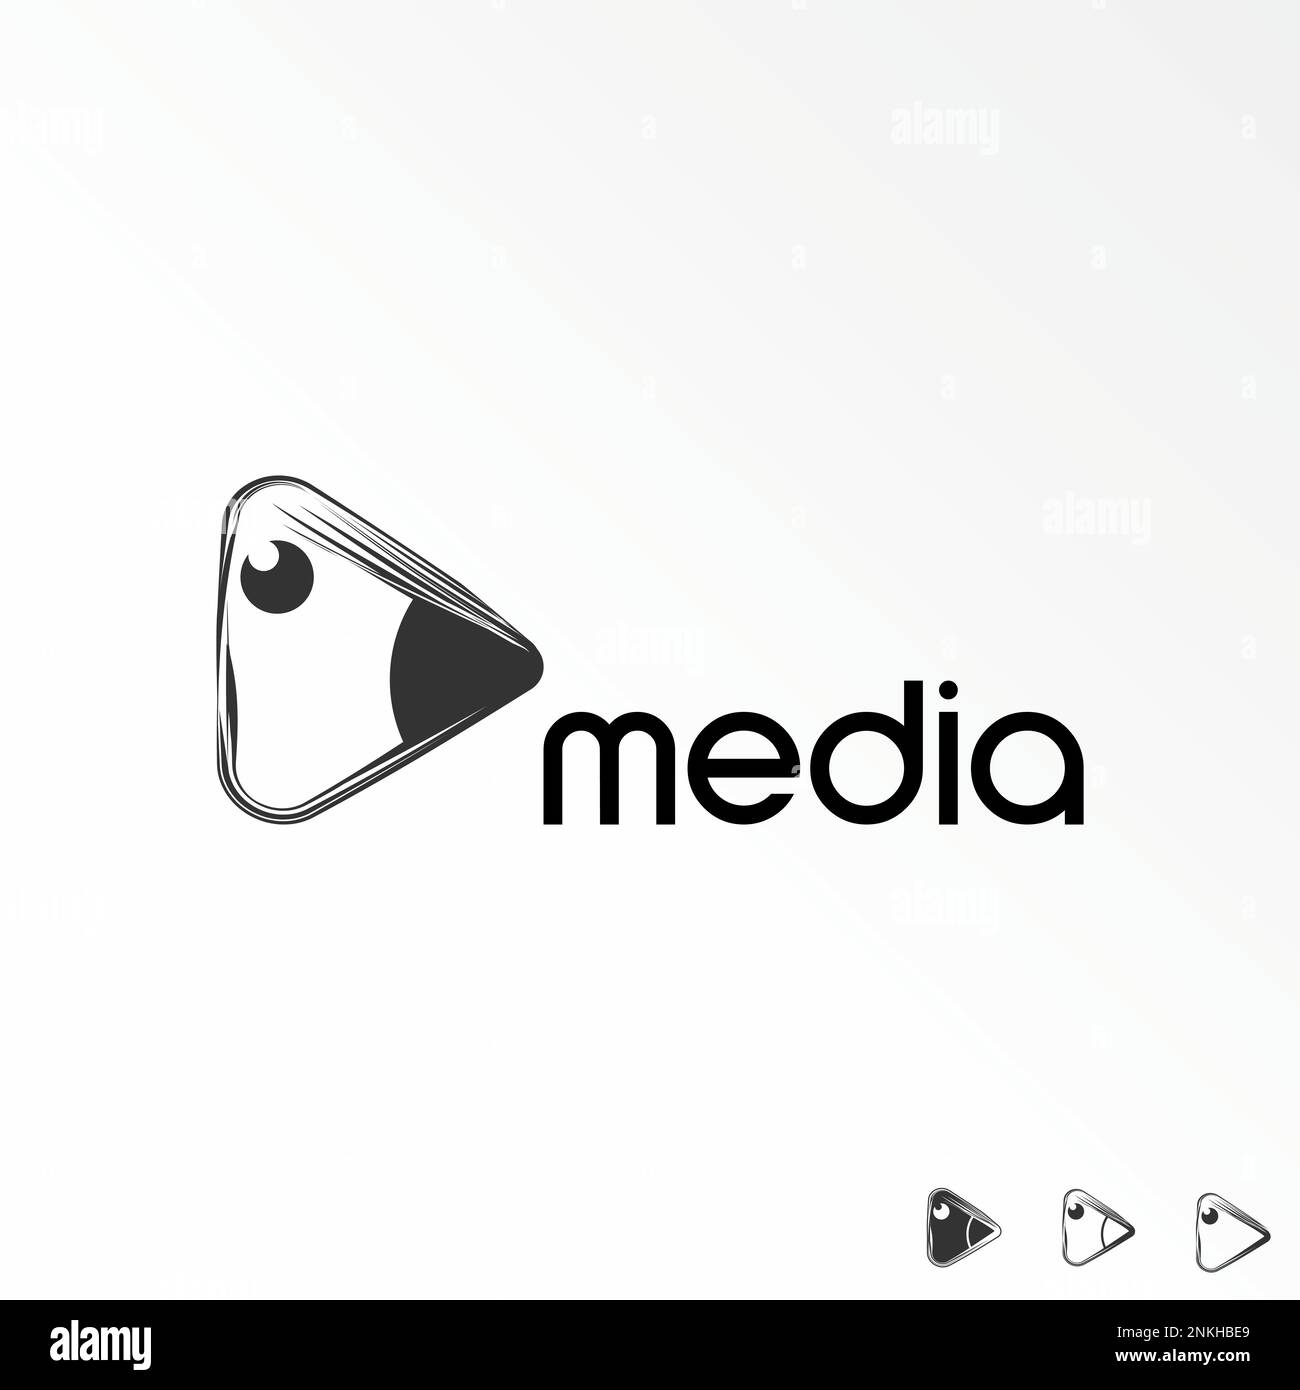 Einfaches und einzigartiges Taubenmaul mit Kratzlinie und Wiedergabe Videobild Grafiksymbol Logo Design abstraktes Konzept Vektormaterial Tier oder Medien Stock Vektor